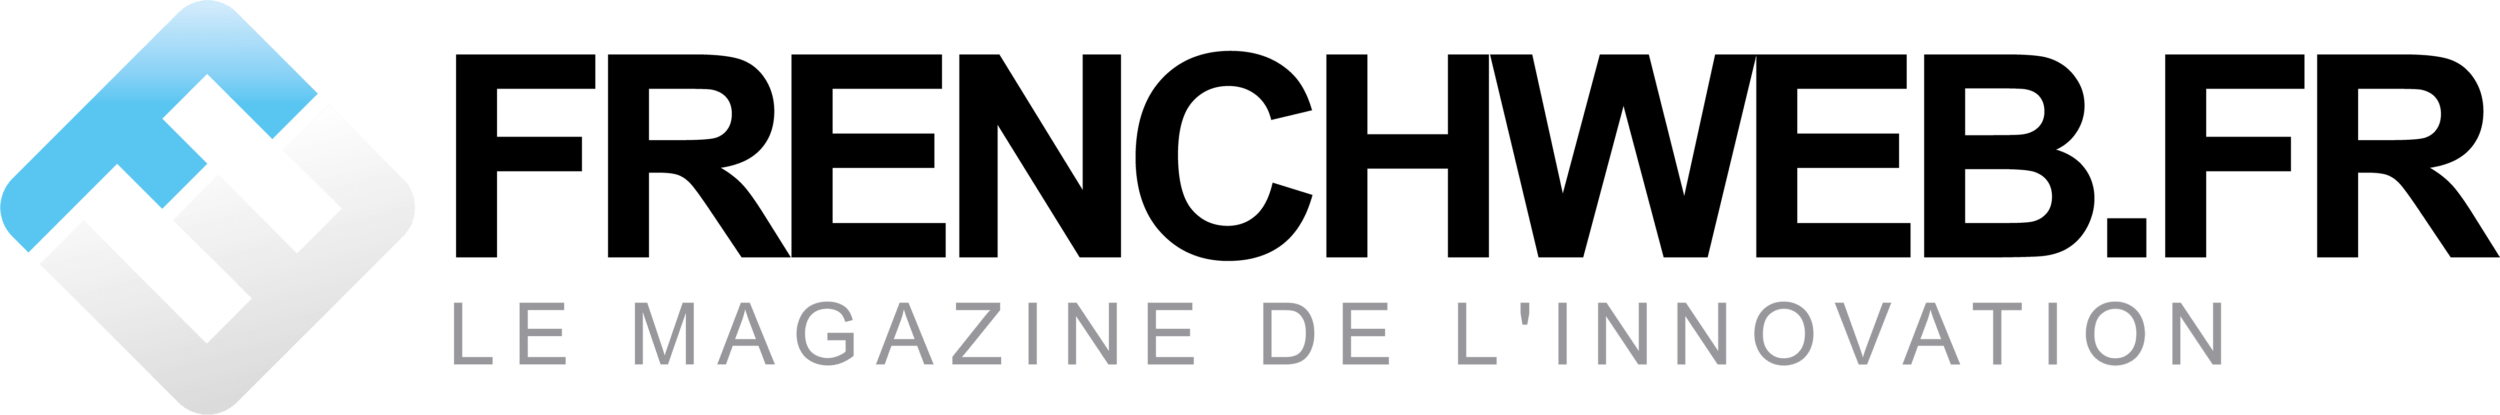 Logo FrenchWeb